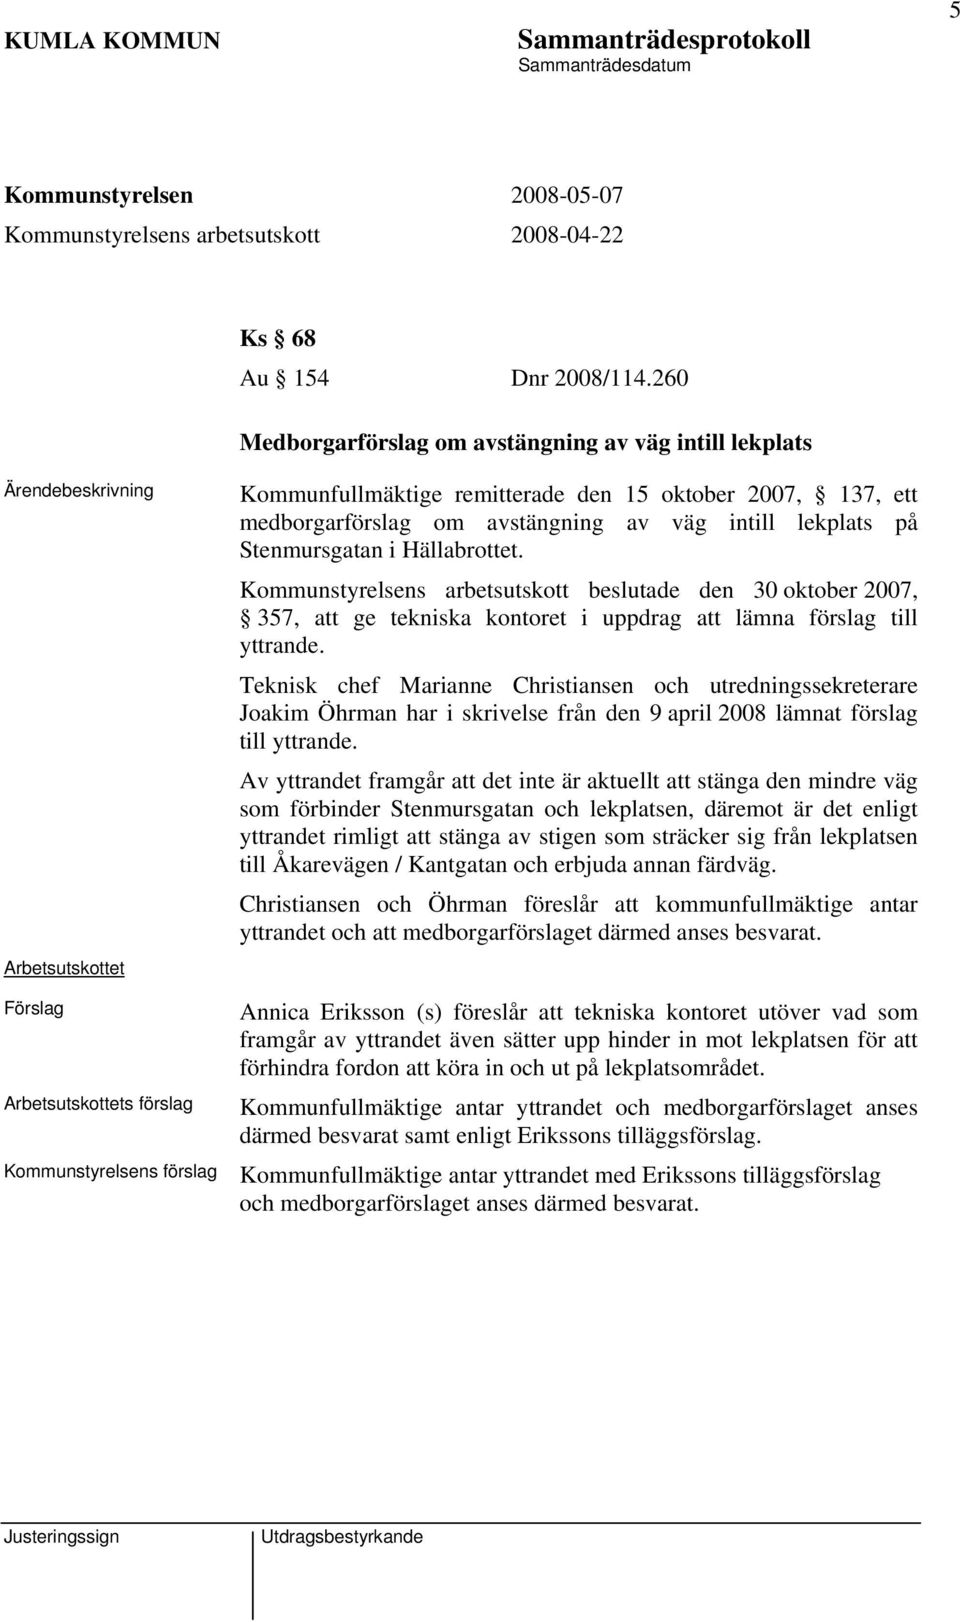 av väg intill lekplats på Stenmursgatan i Hällabrottet. Kommunstyrelsens arbetsutskott beslutade den 30 oktober 2007, 357, att ge tekniska kontoret i uppdrag att lämna förslag till yttrande.